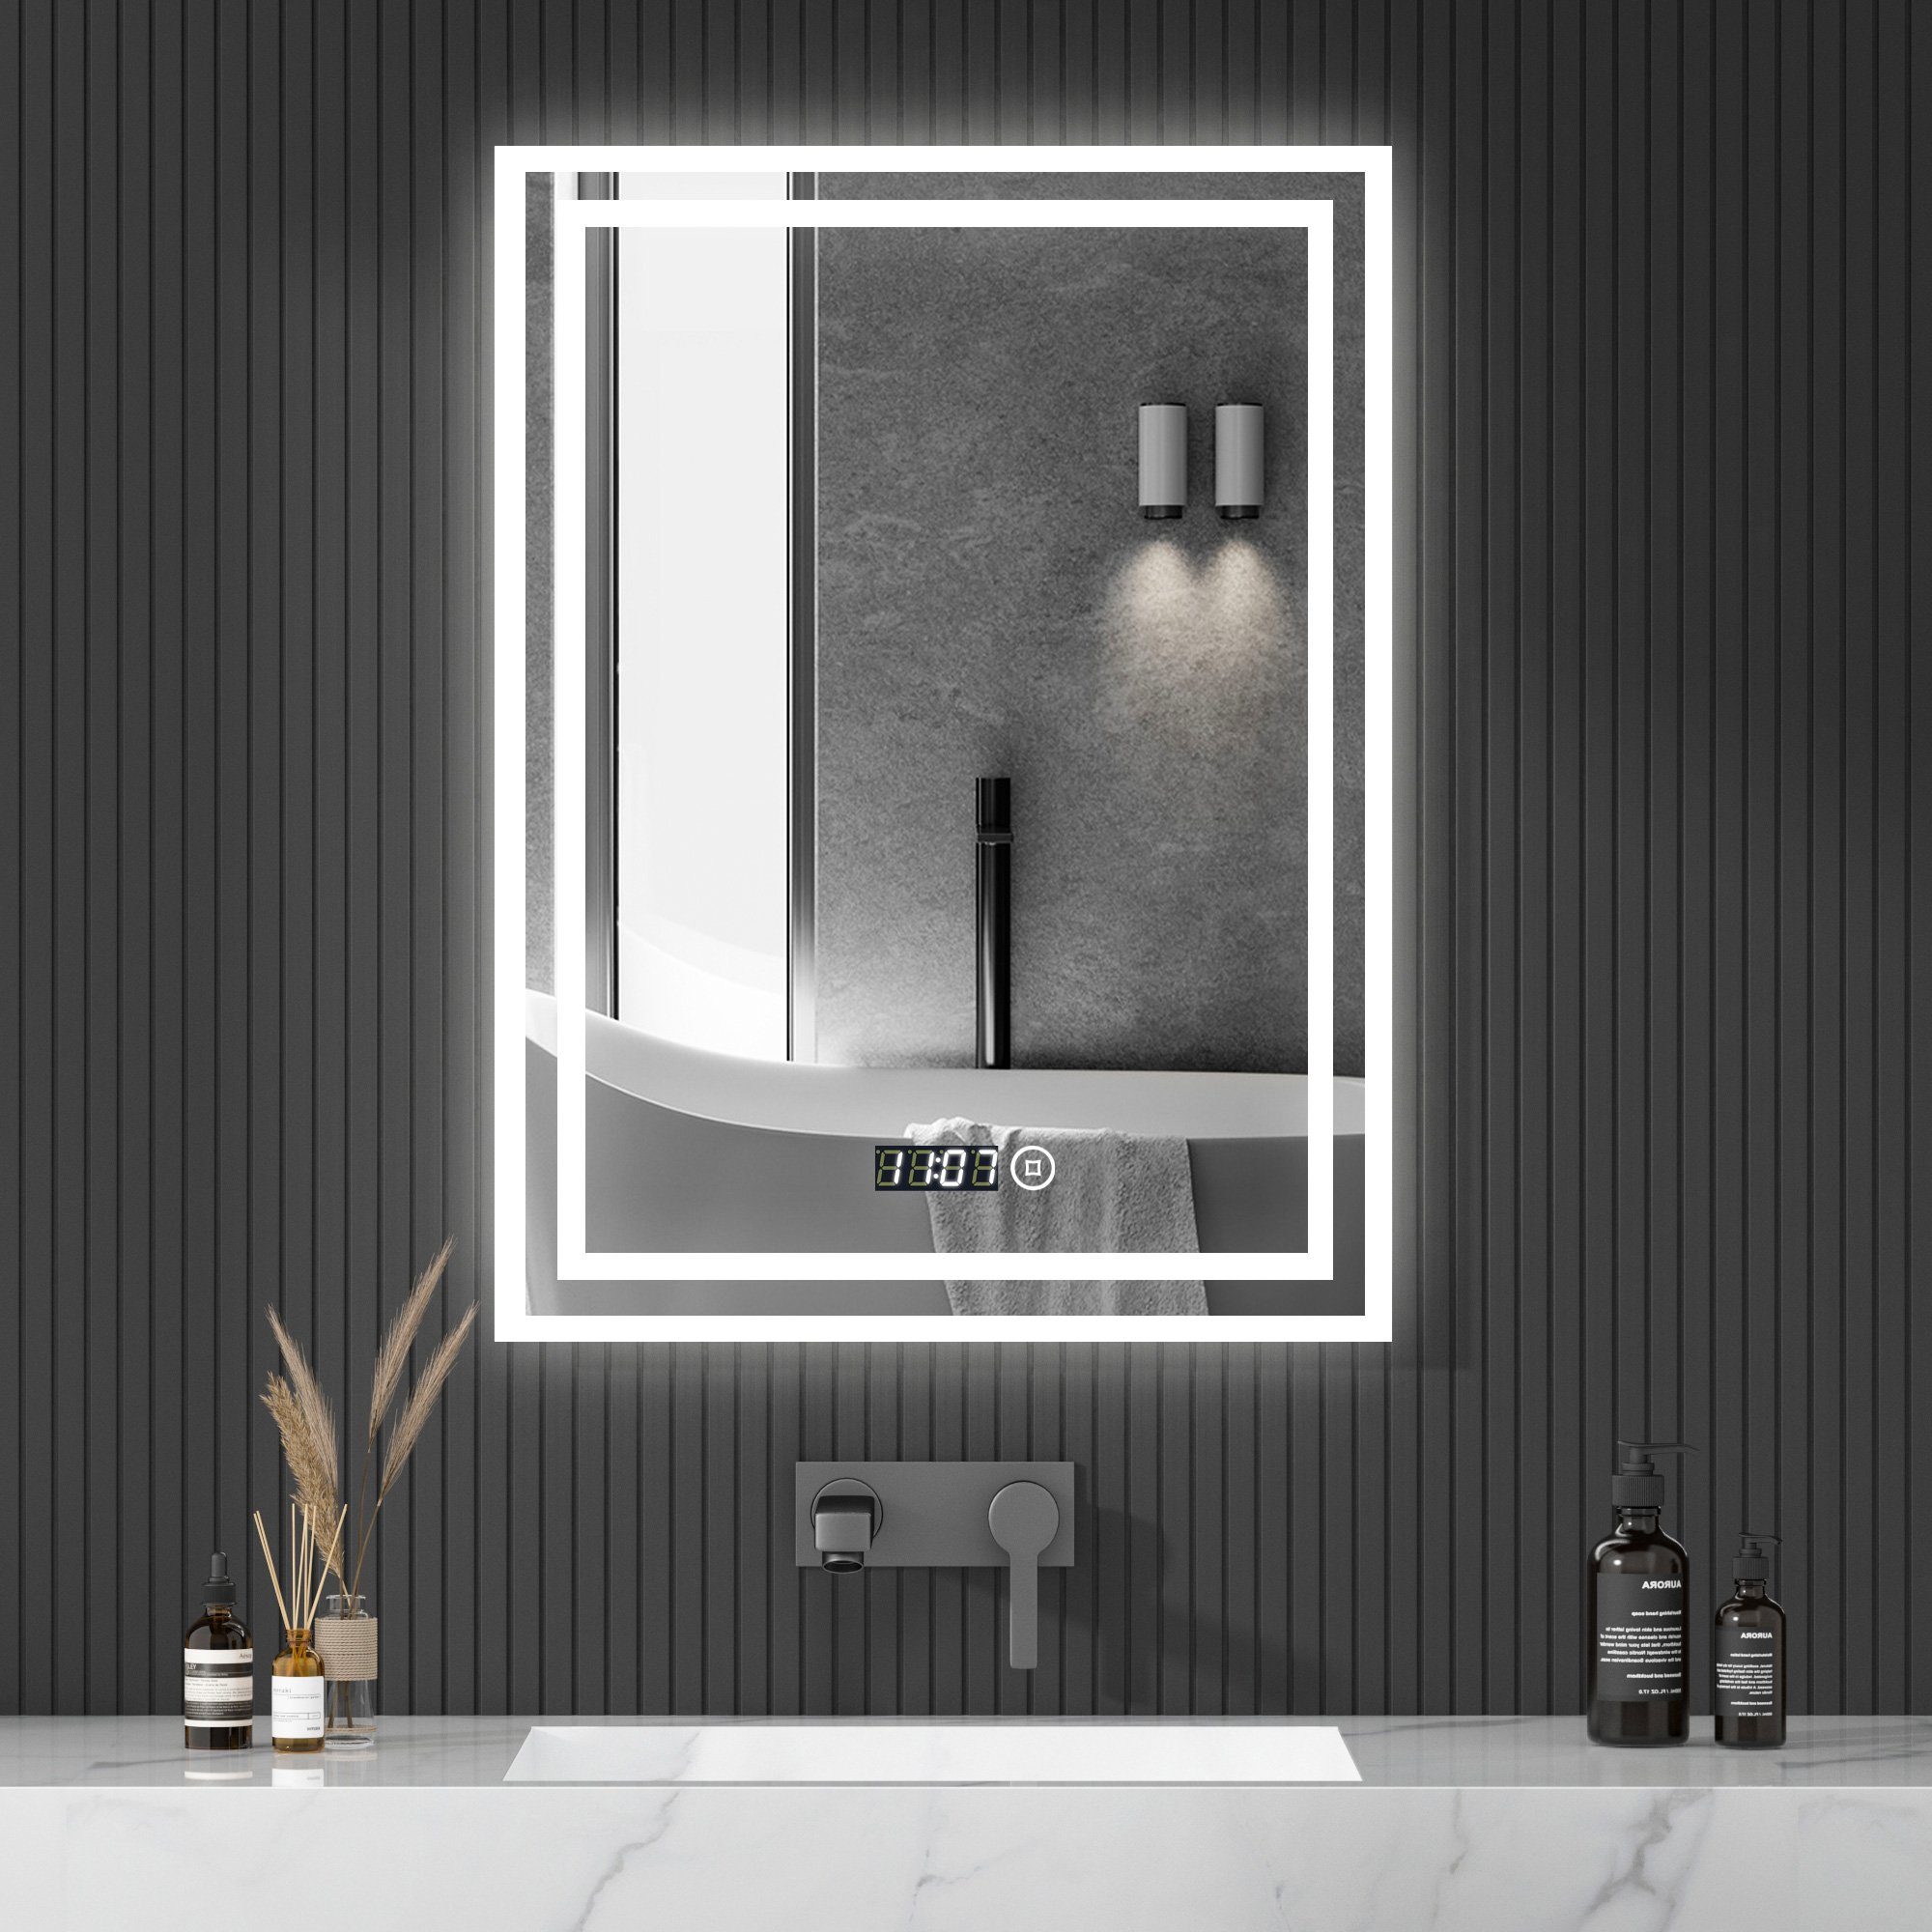 WDWRITTI Wandspiegel LED Spiegel Badspiegel 50x70 mit Uhr Touch Kalt/Neutral/Warmweiß (Dimmbar, Speicherfunktion), Energiesparende, IP44